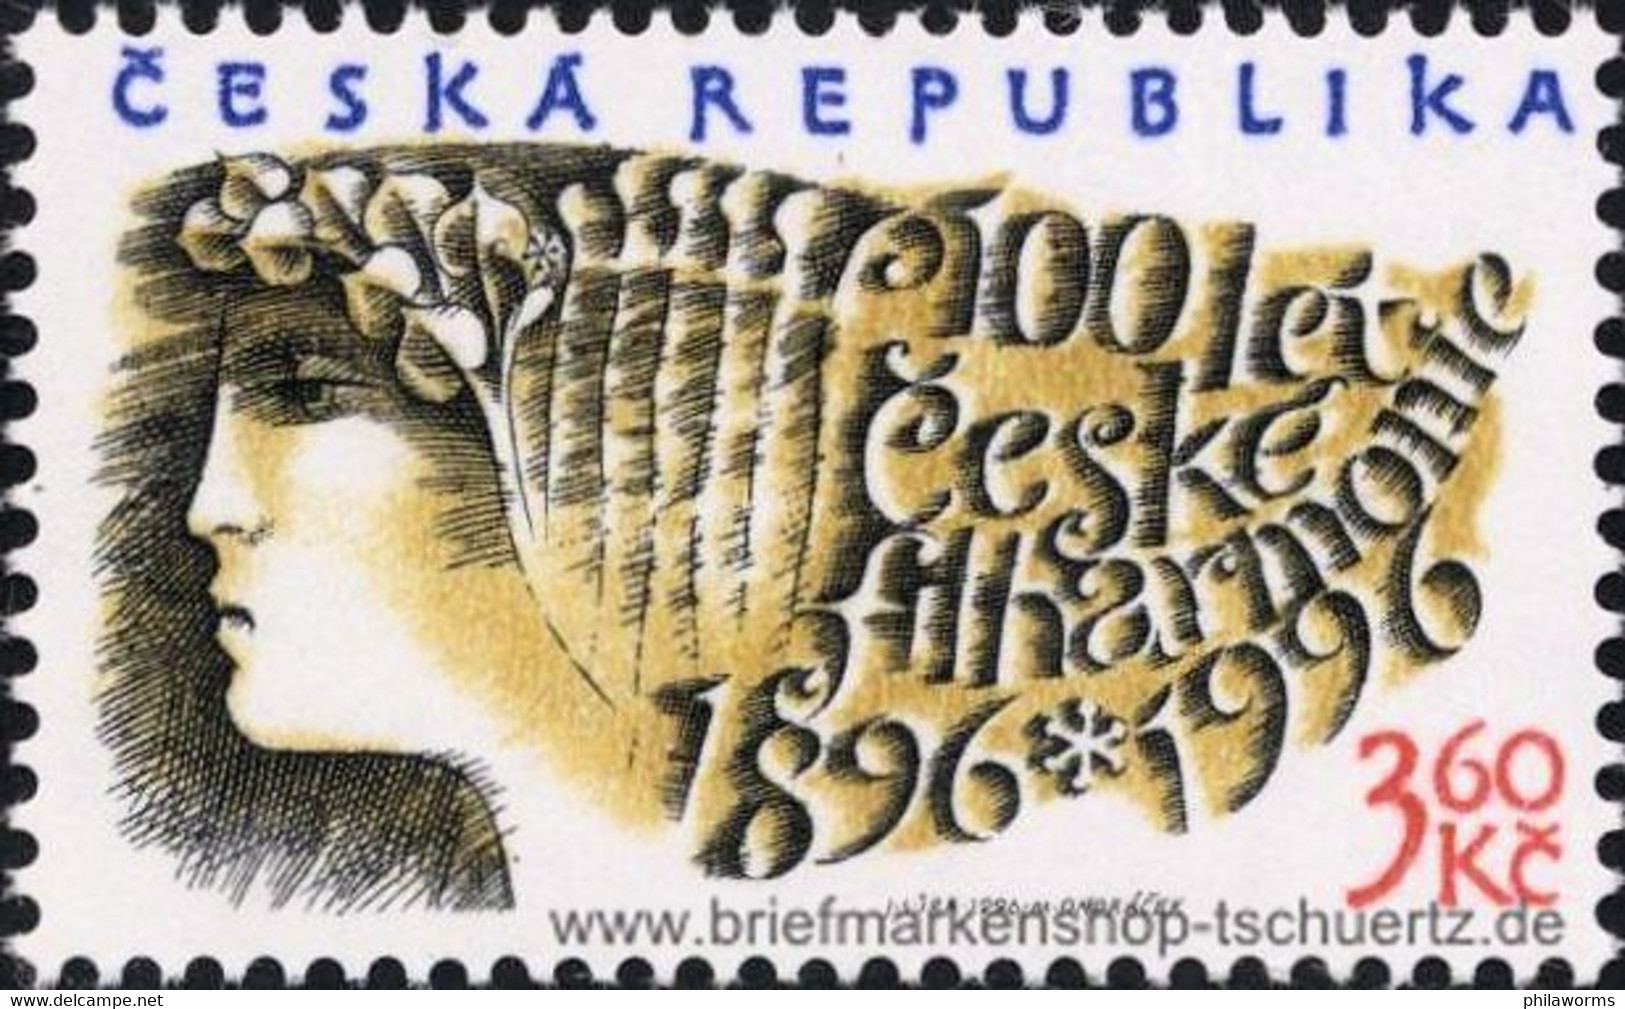 Tschechien 1996, Mi. 100 ** - Ongebruikt